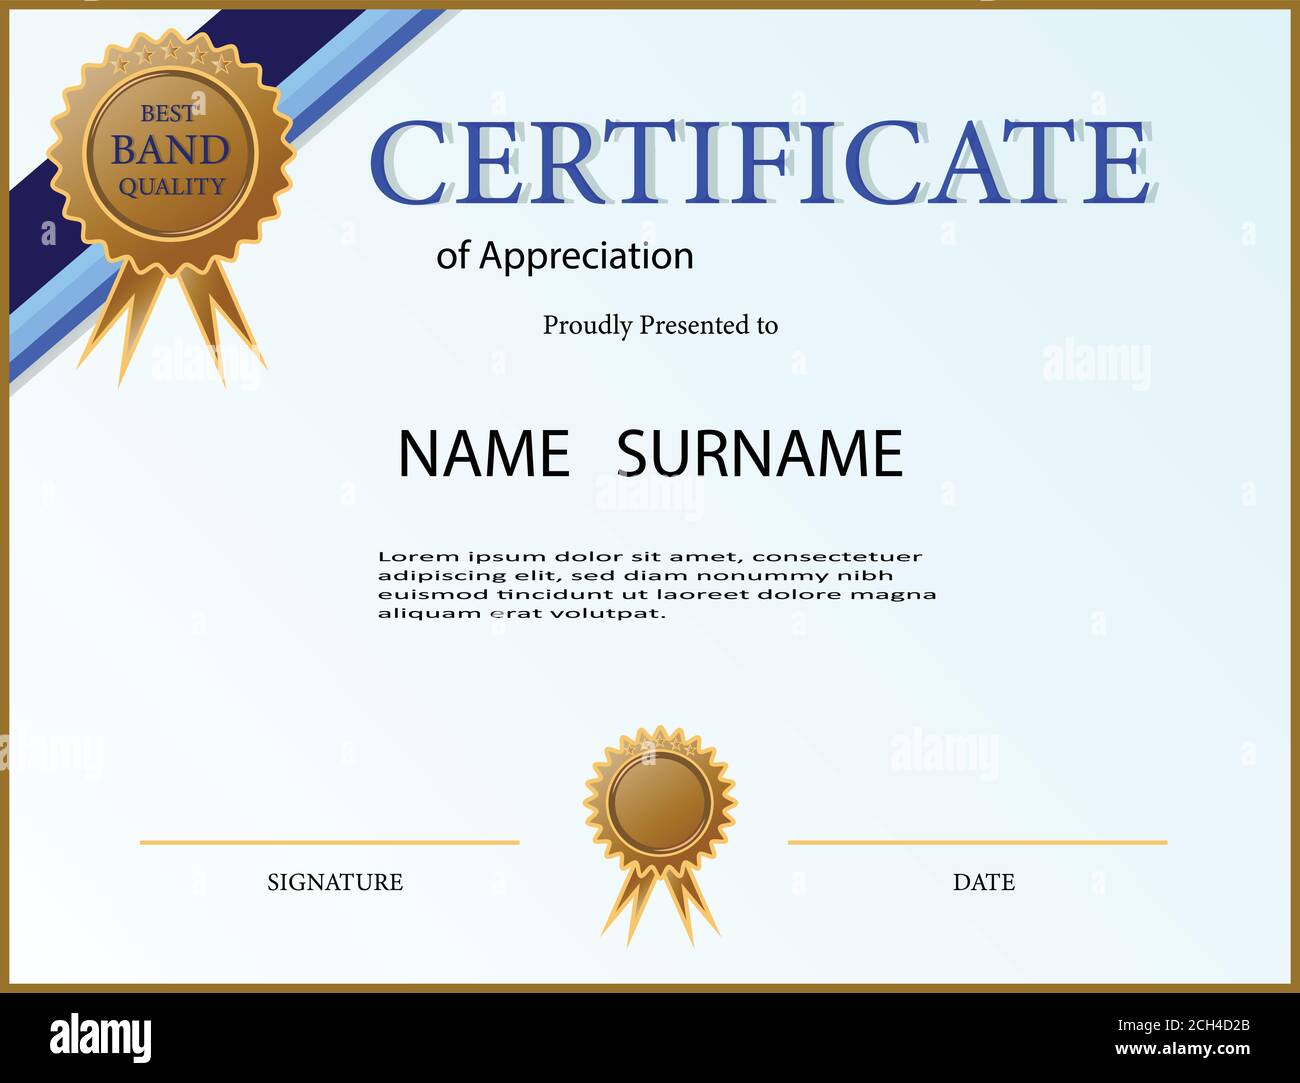 Kreative Urkunde der Anerkennung Award-Vorlage mit blau und golden Pertaining To Certificates Of Appreciation Template